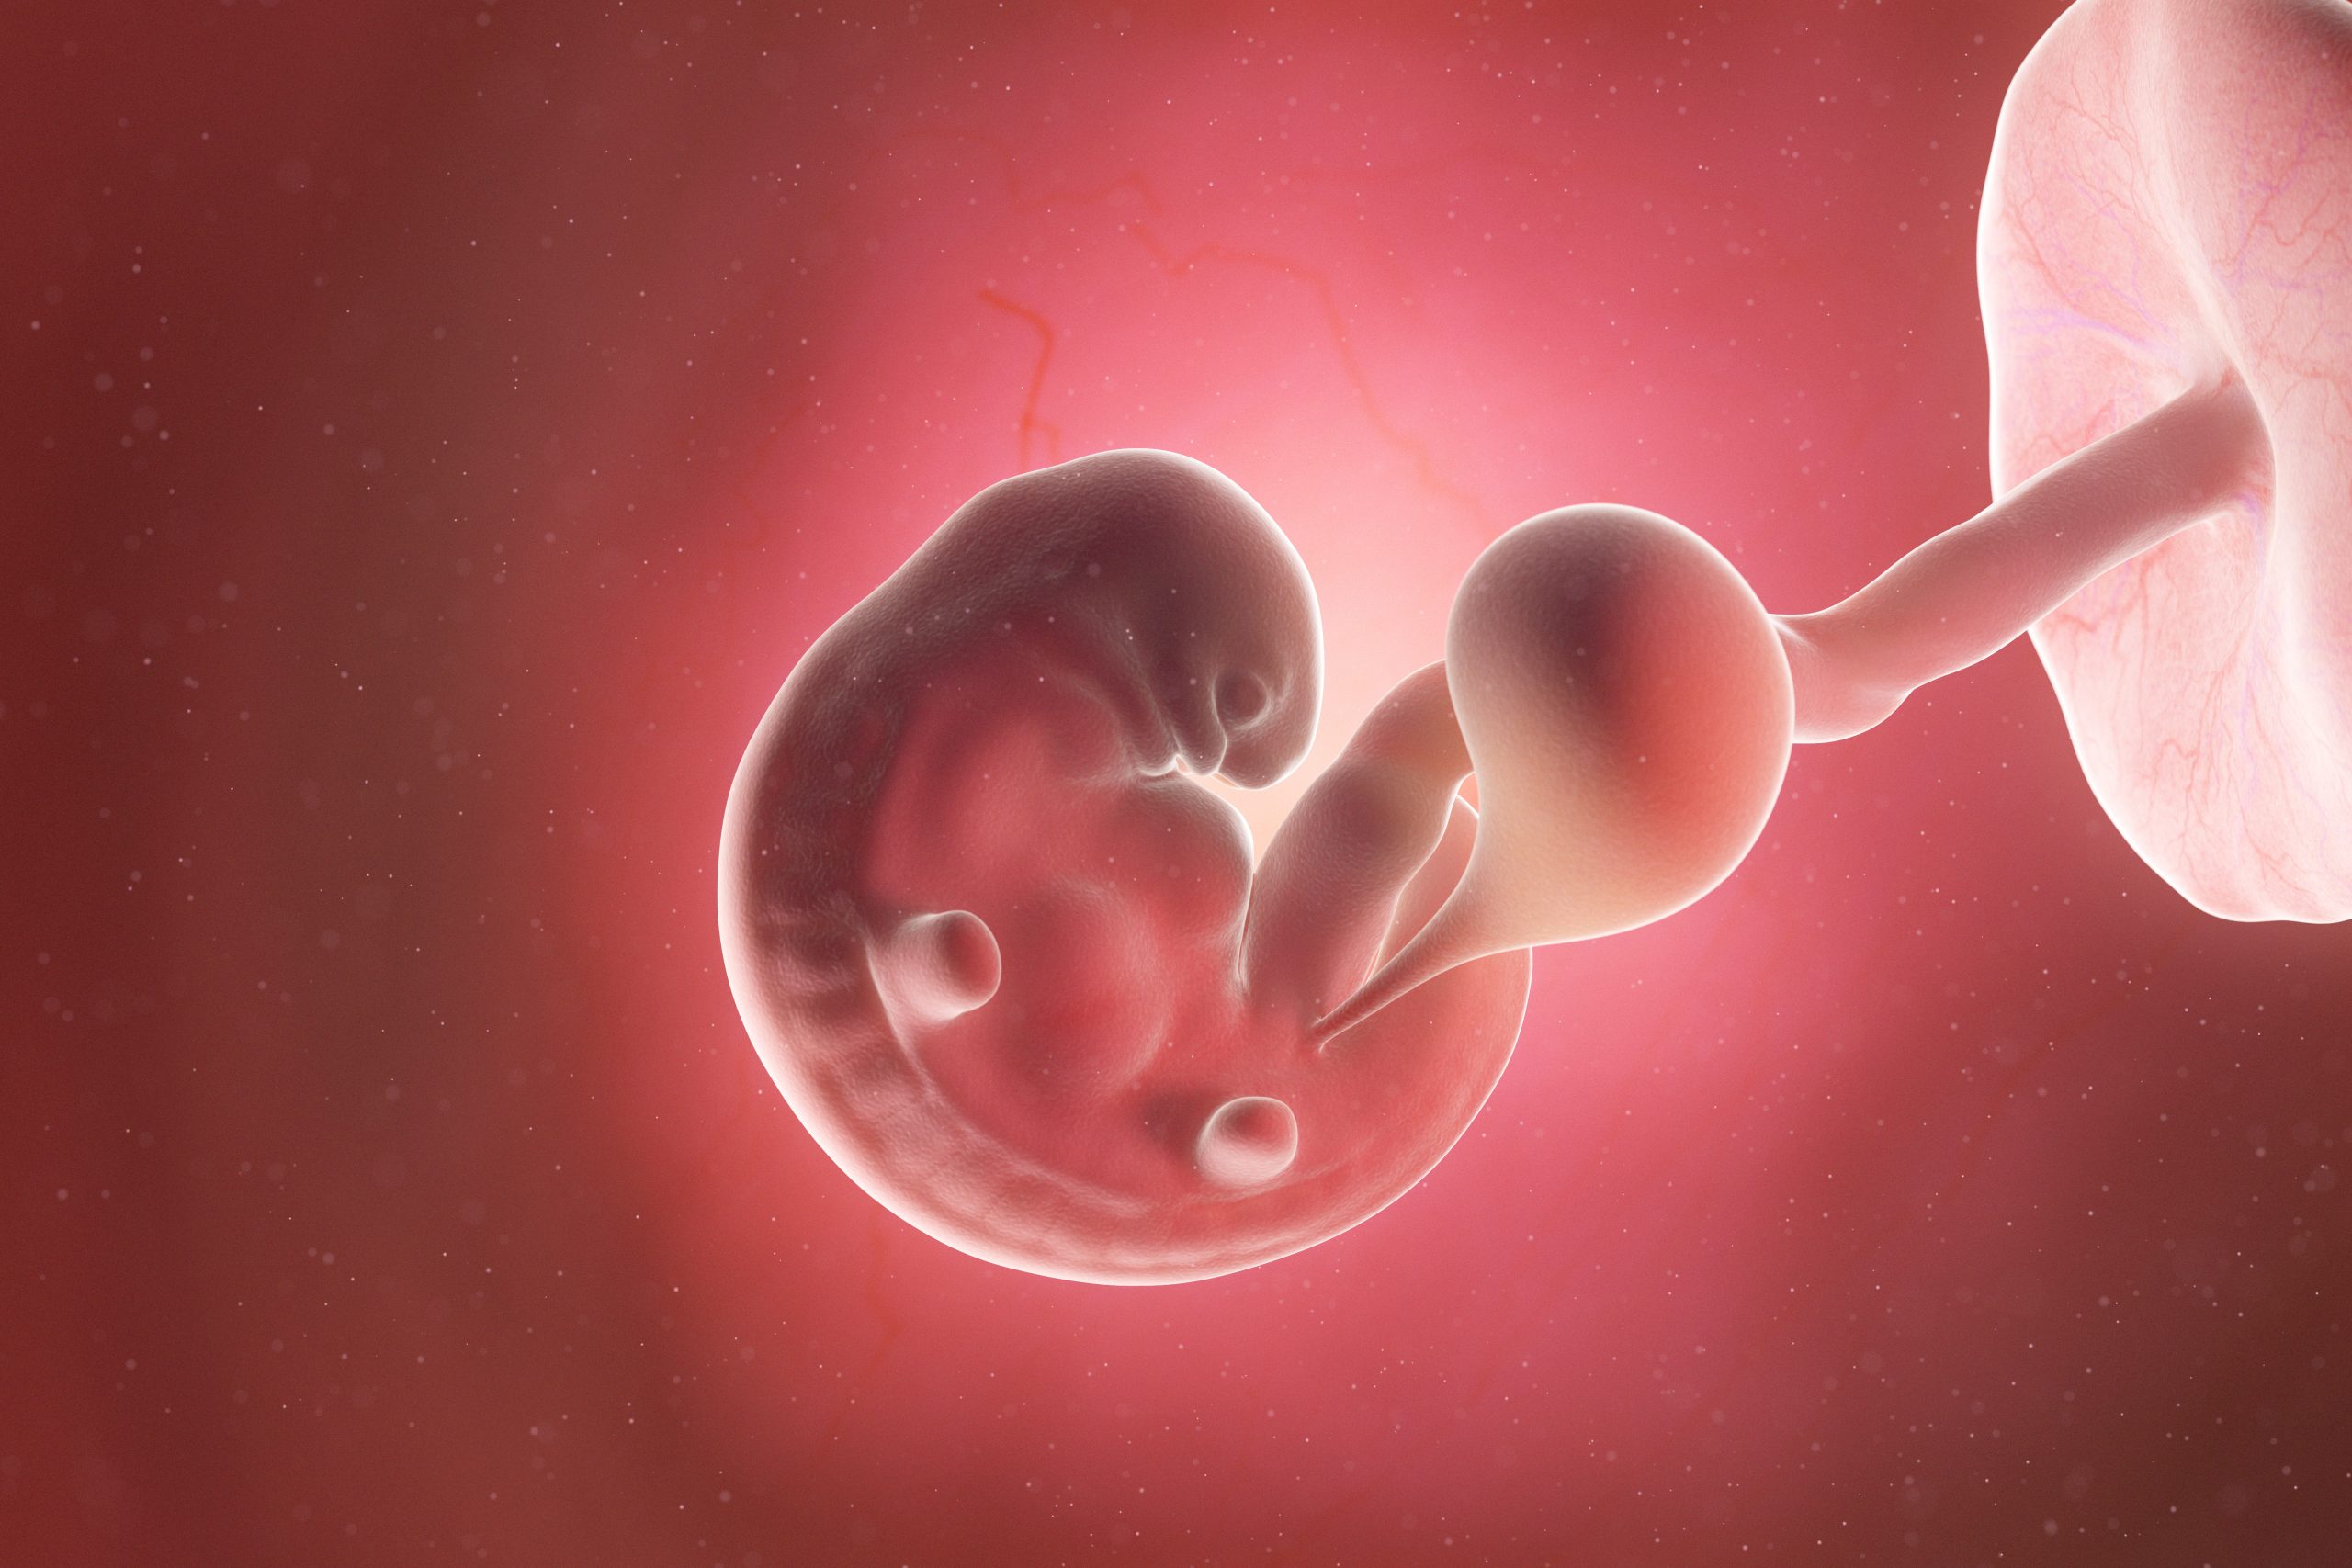 6 эмбриональная неделя. Эмбрион человека 6 недель.